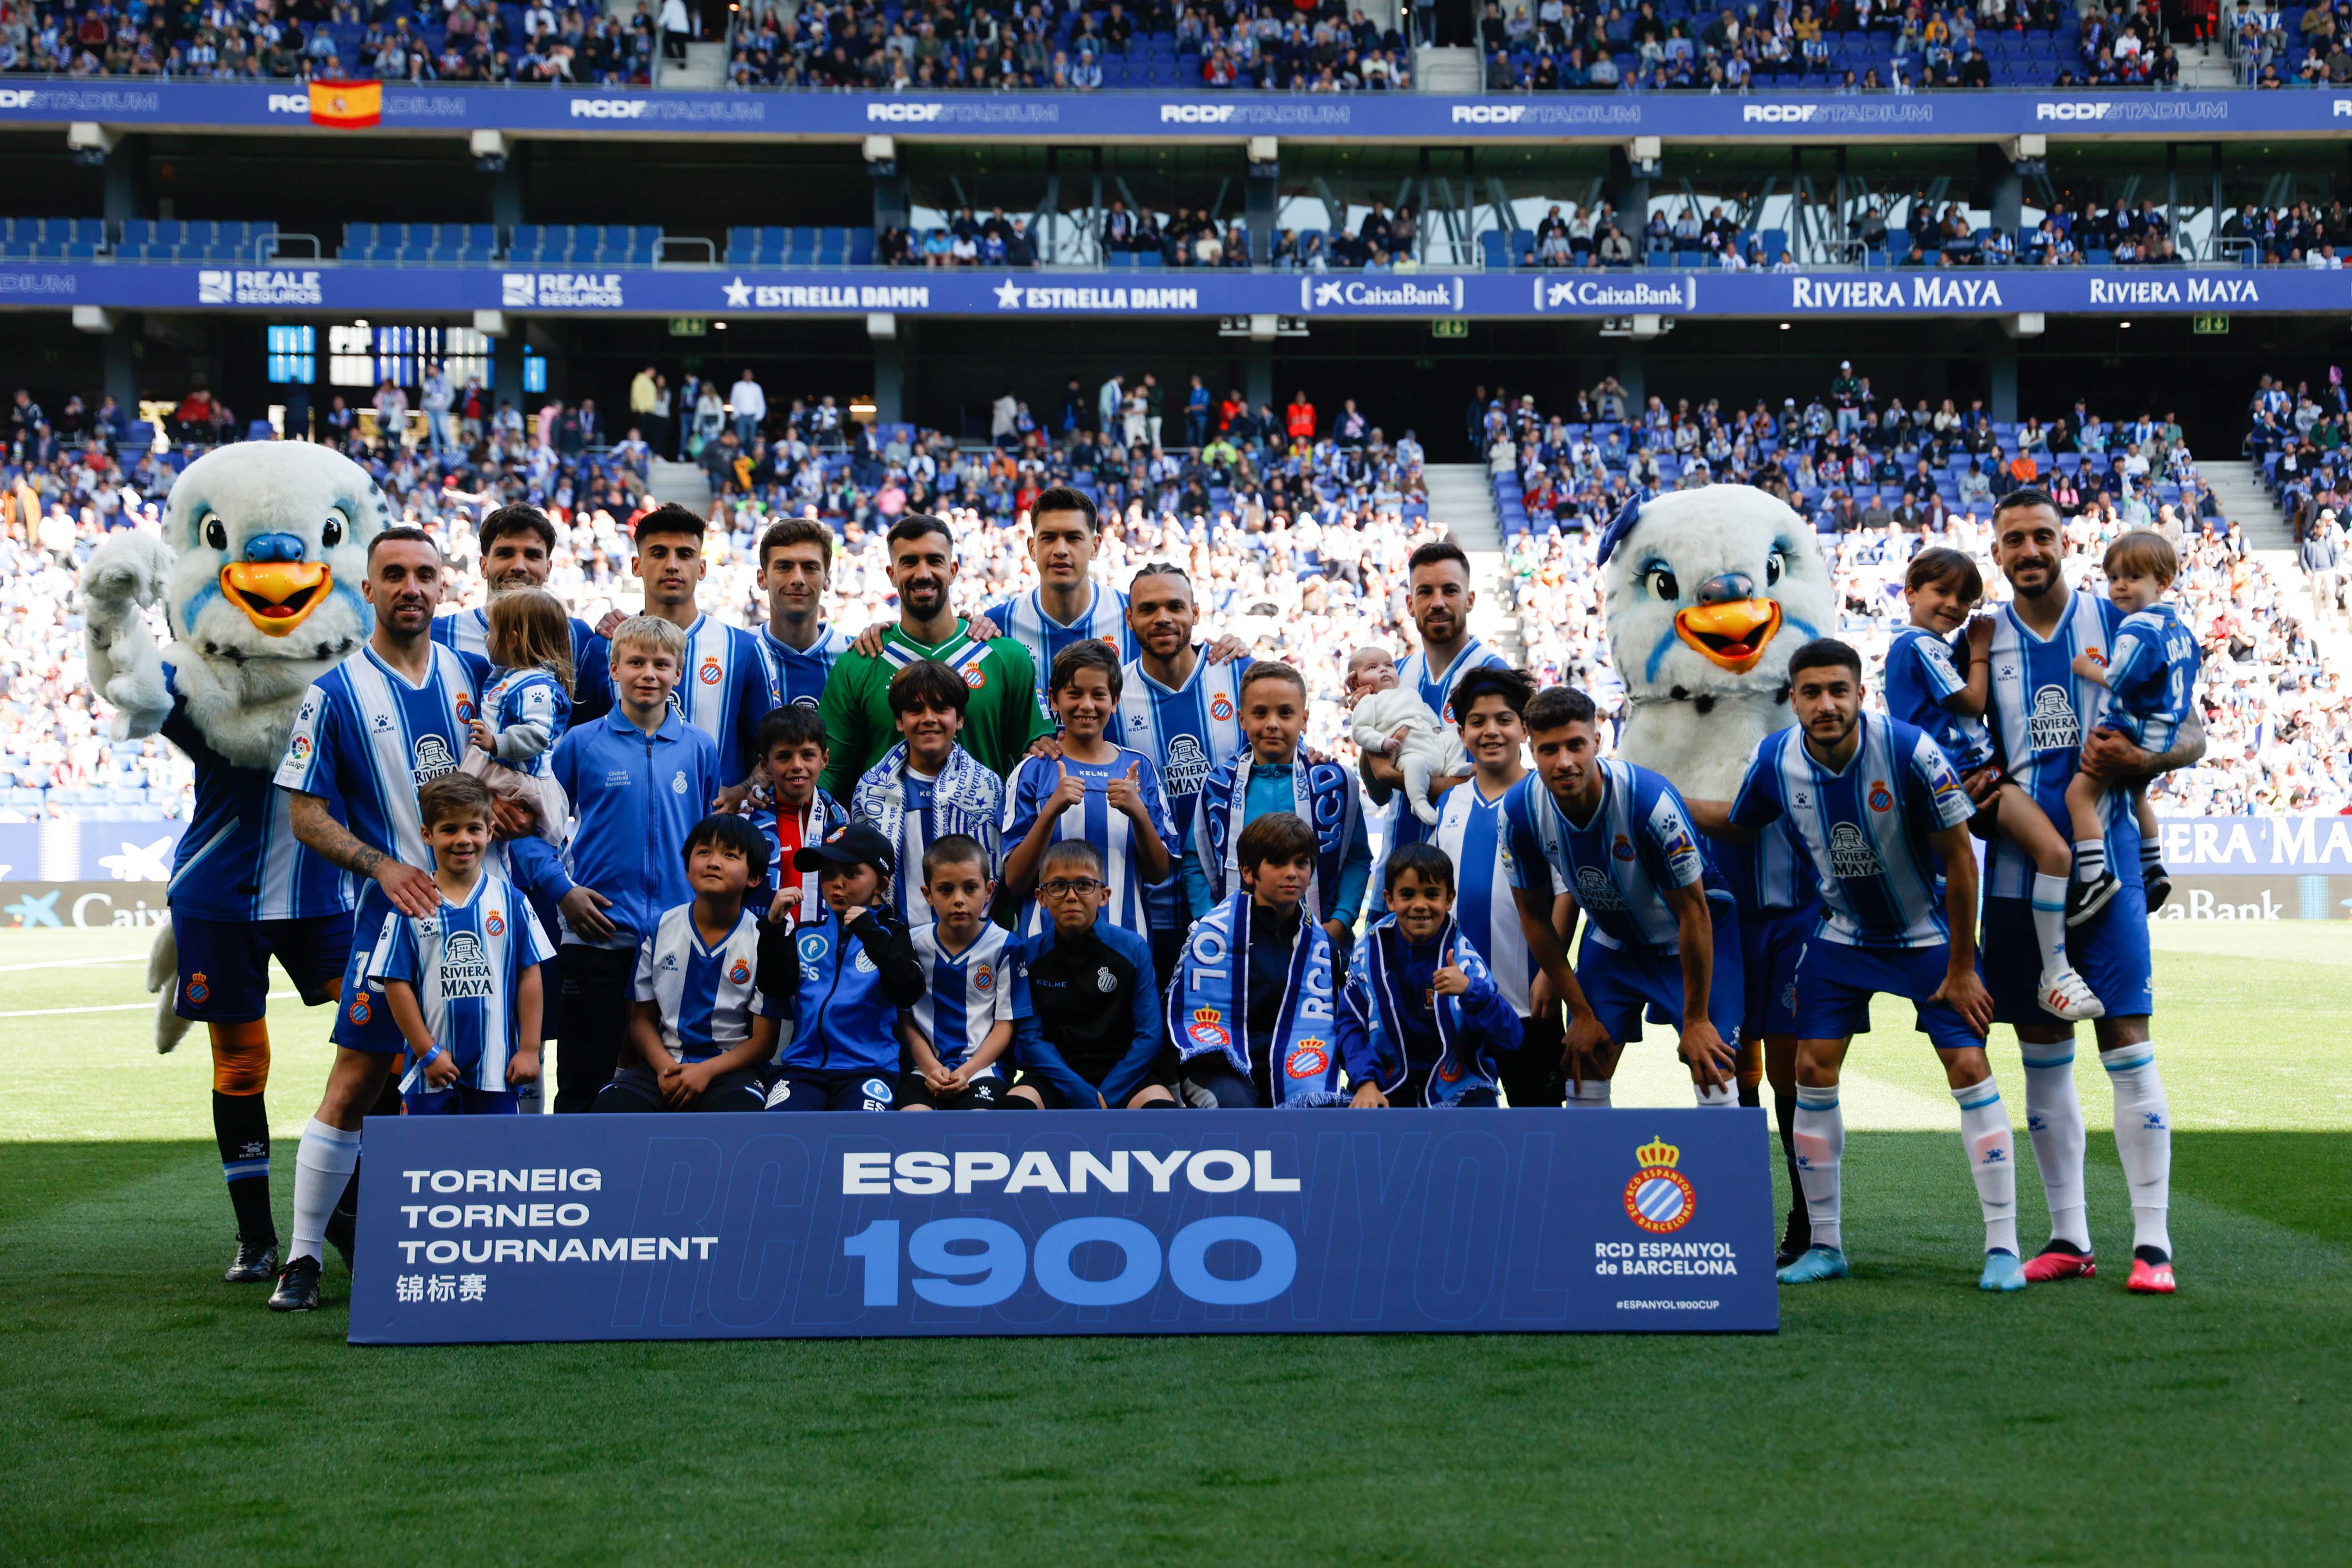 El torneo Espanyol 1900, ¡un éxito!